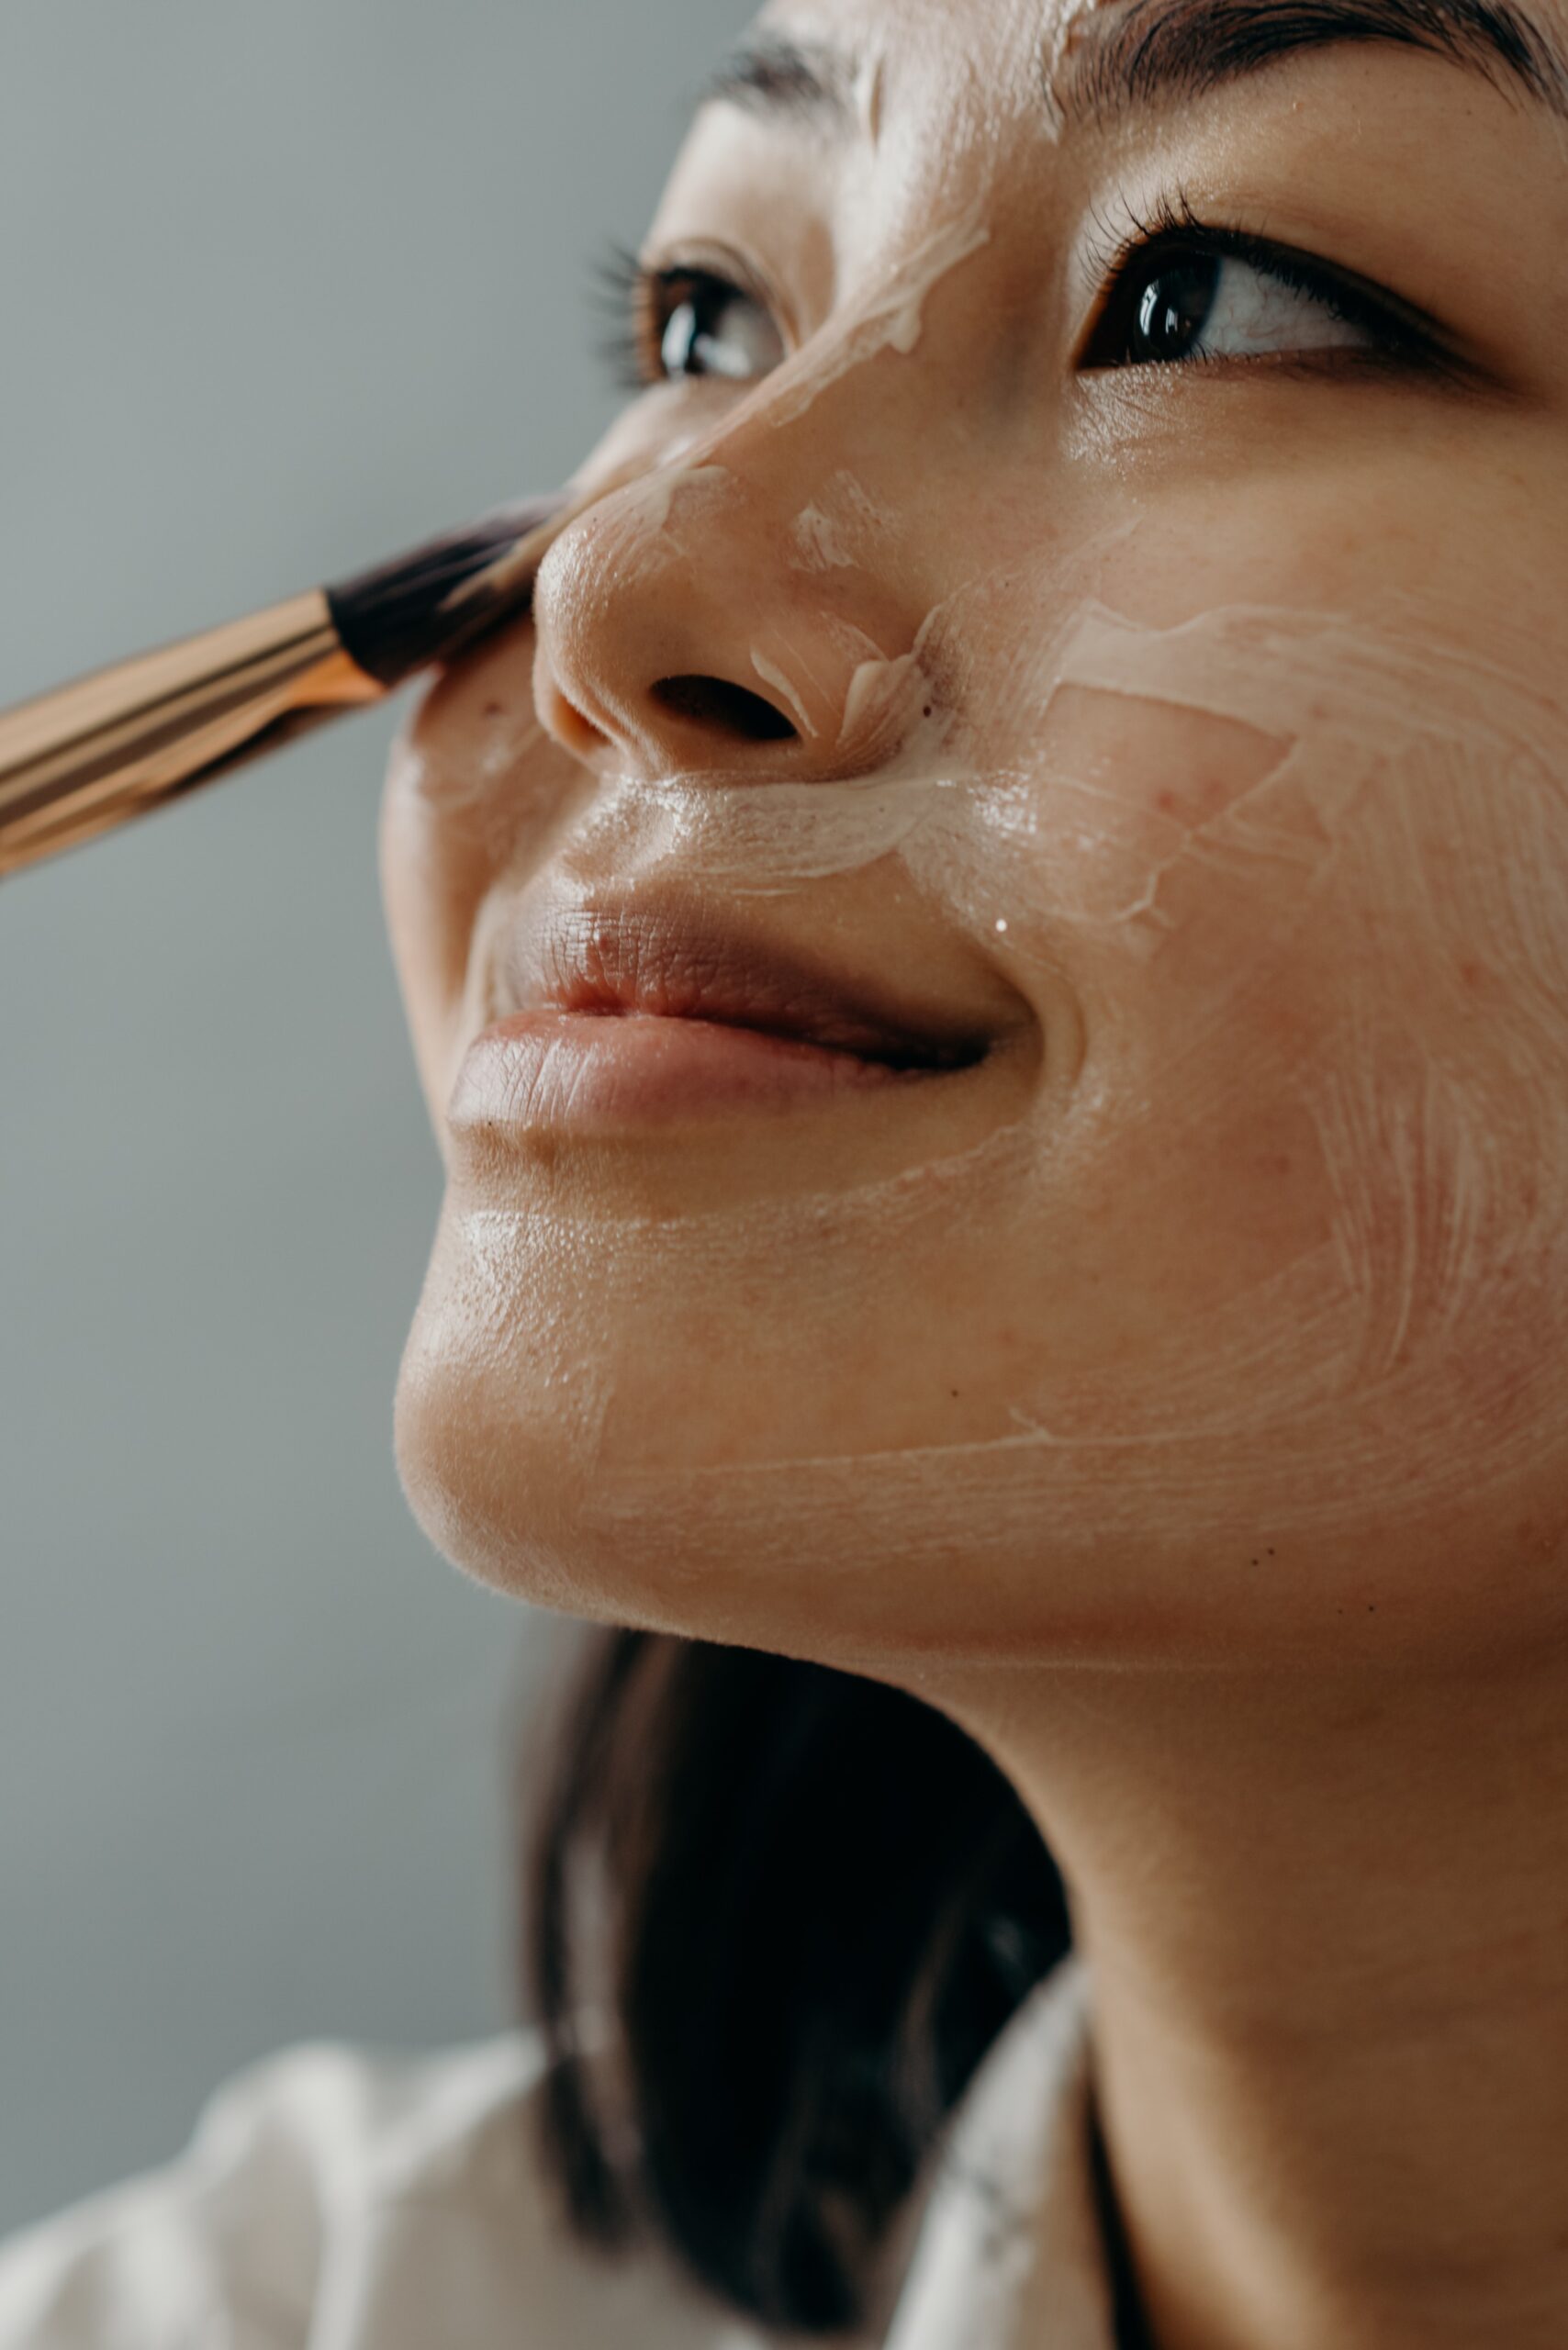 girl applying cream on her face